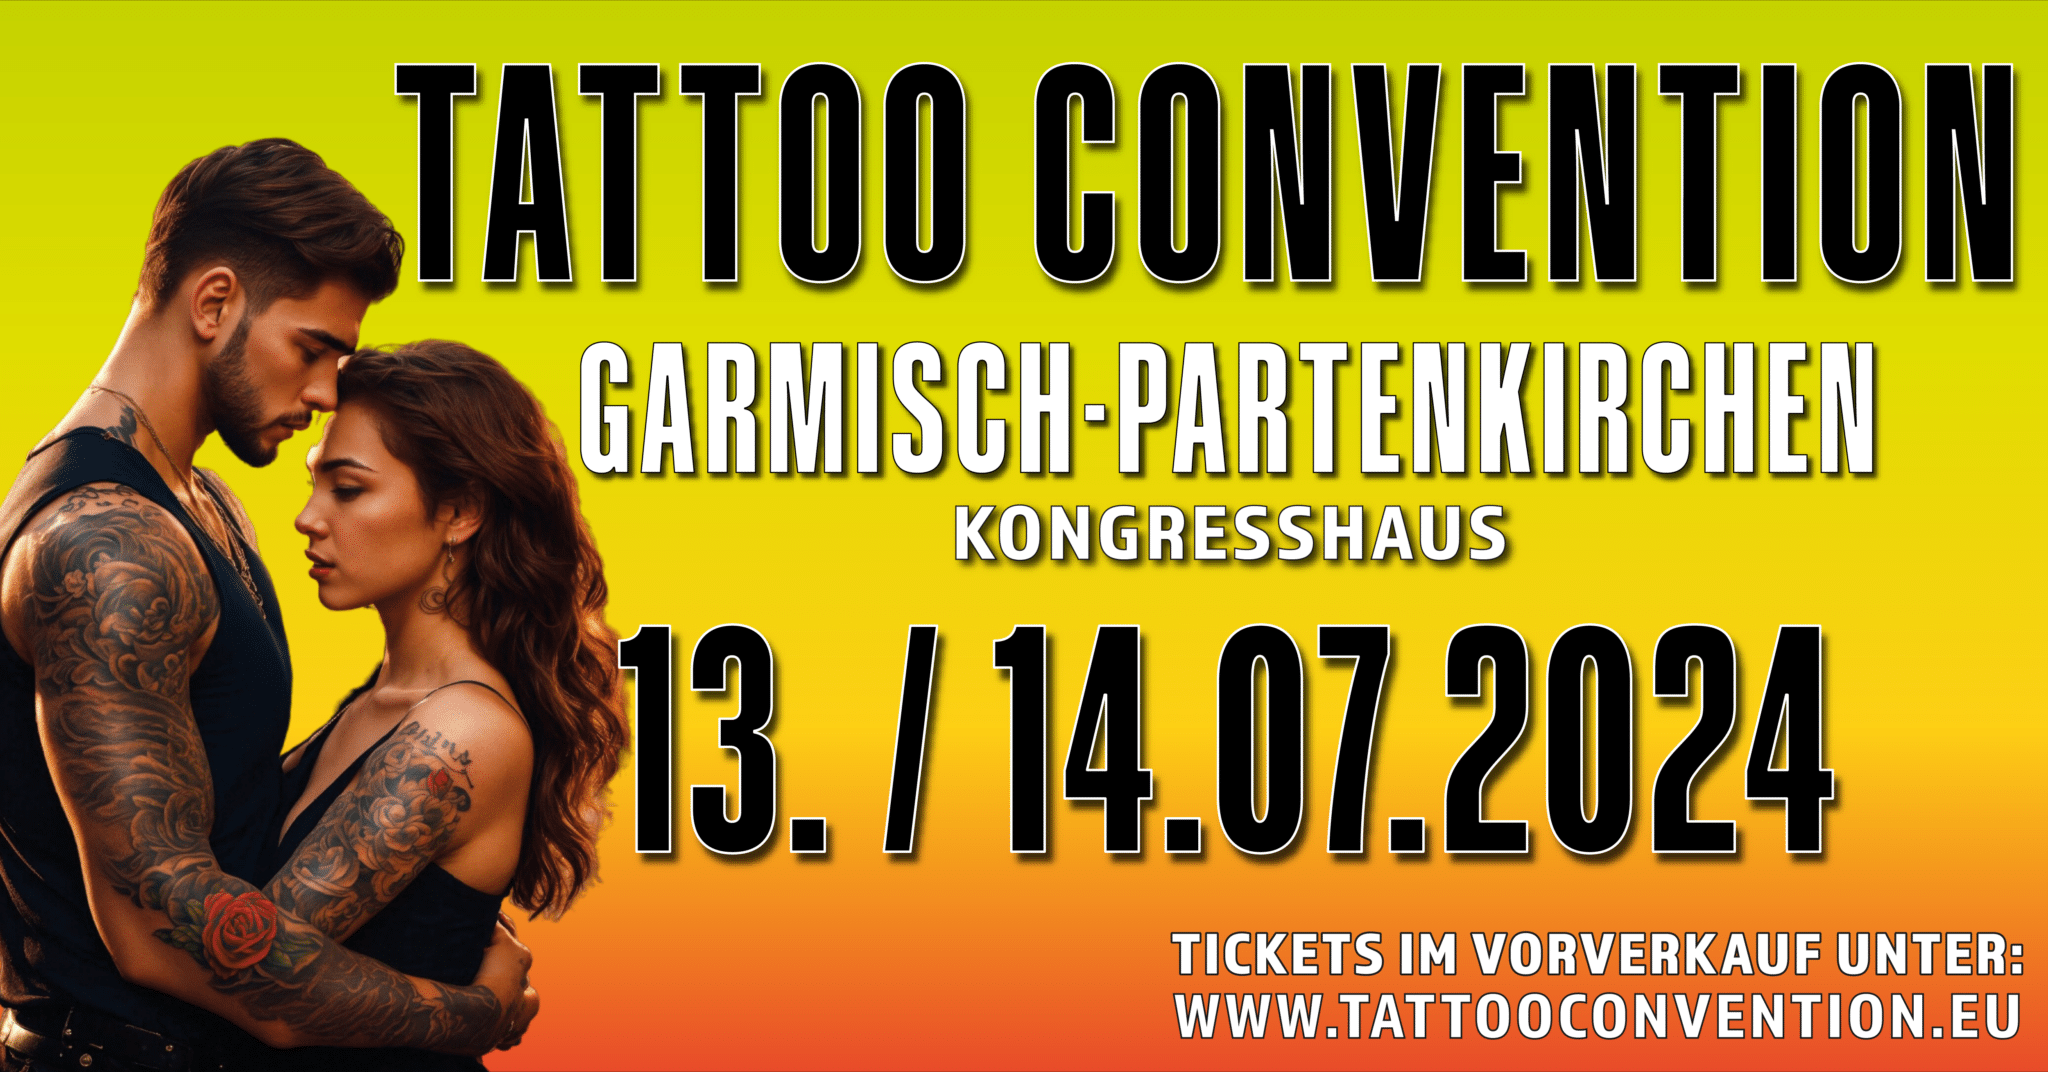 Tattoo Convention Garmisch Partenkirchen